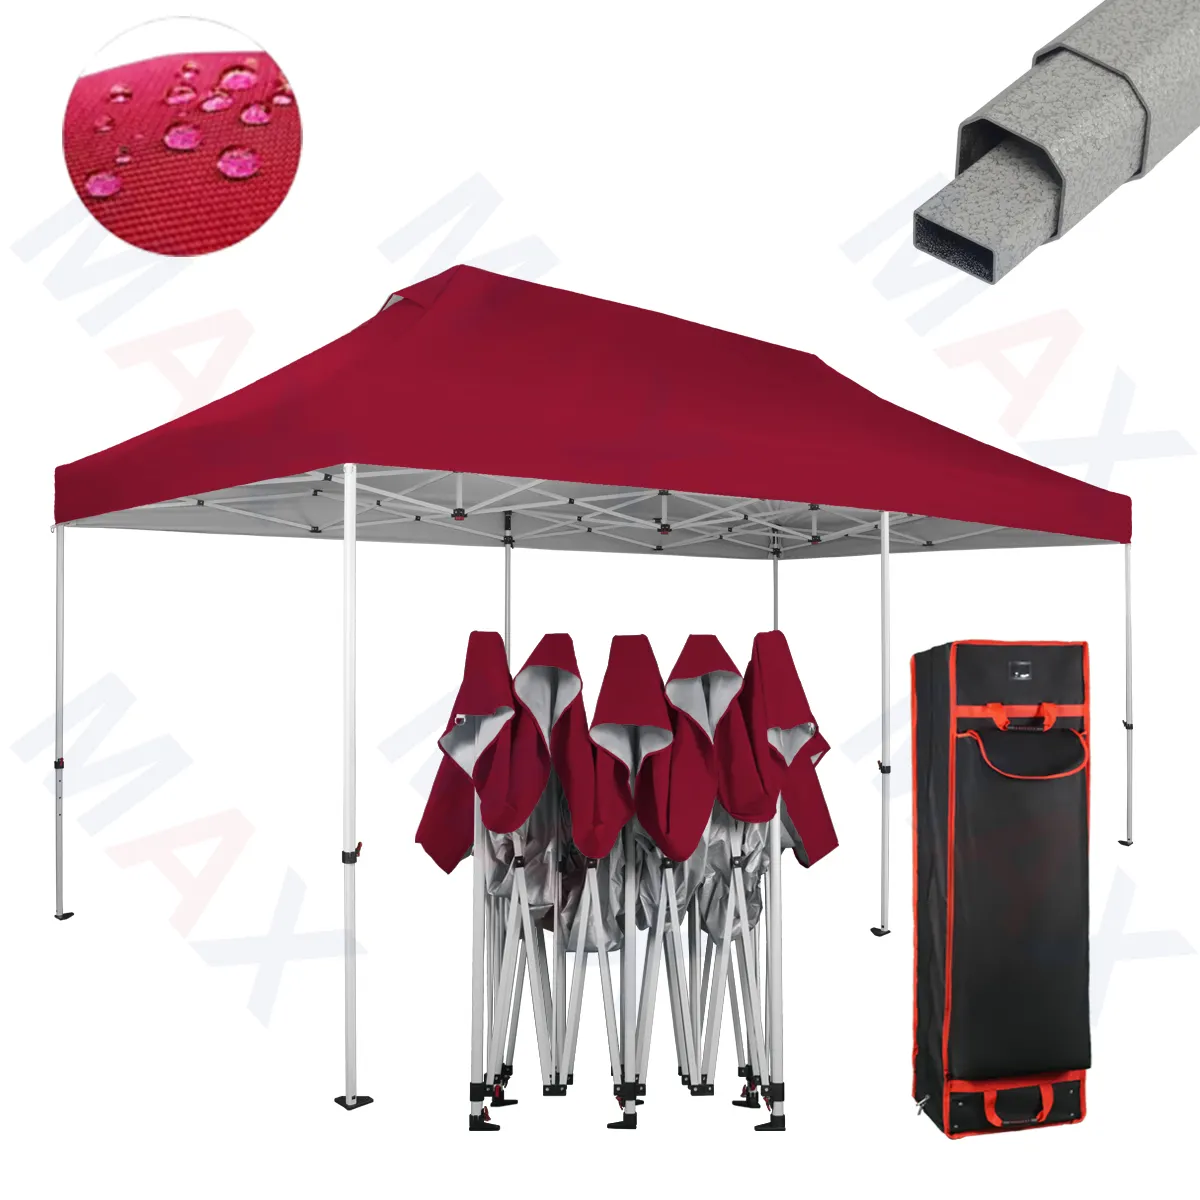 Promocional Octeel 1020 gazebo impressão vermelho tenda de acampamento 6 pessoas para Exposição Display trade show tenda